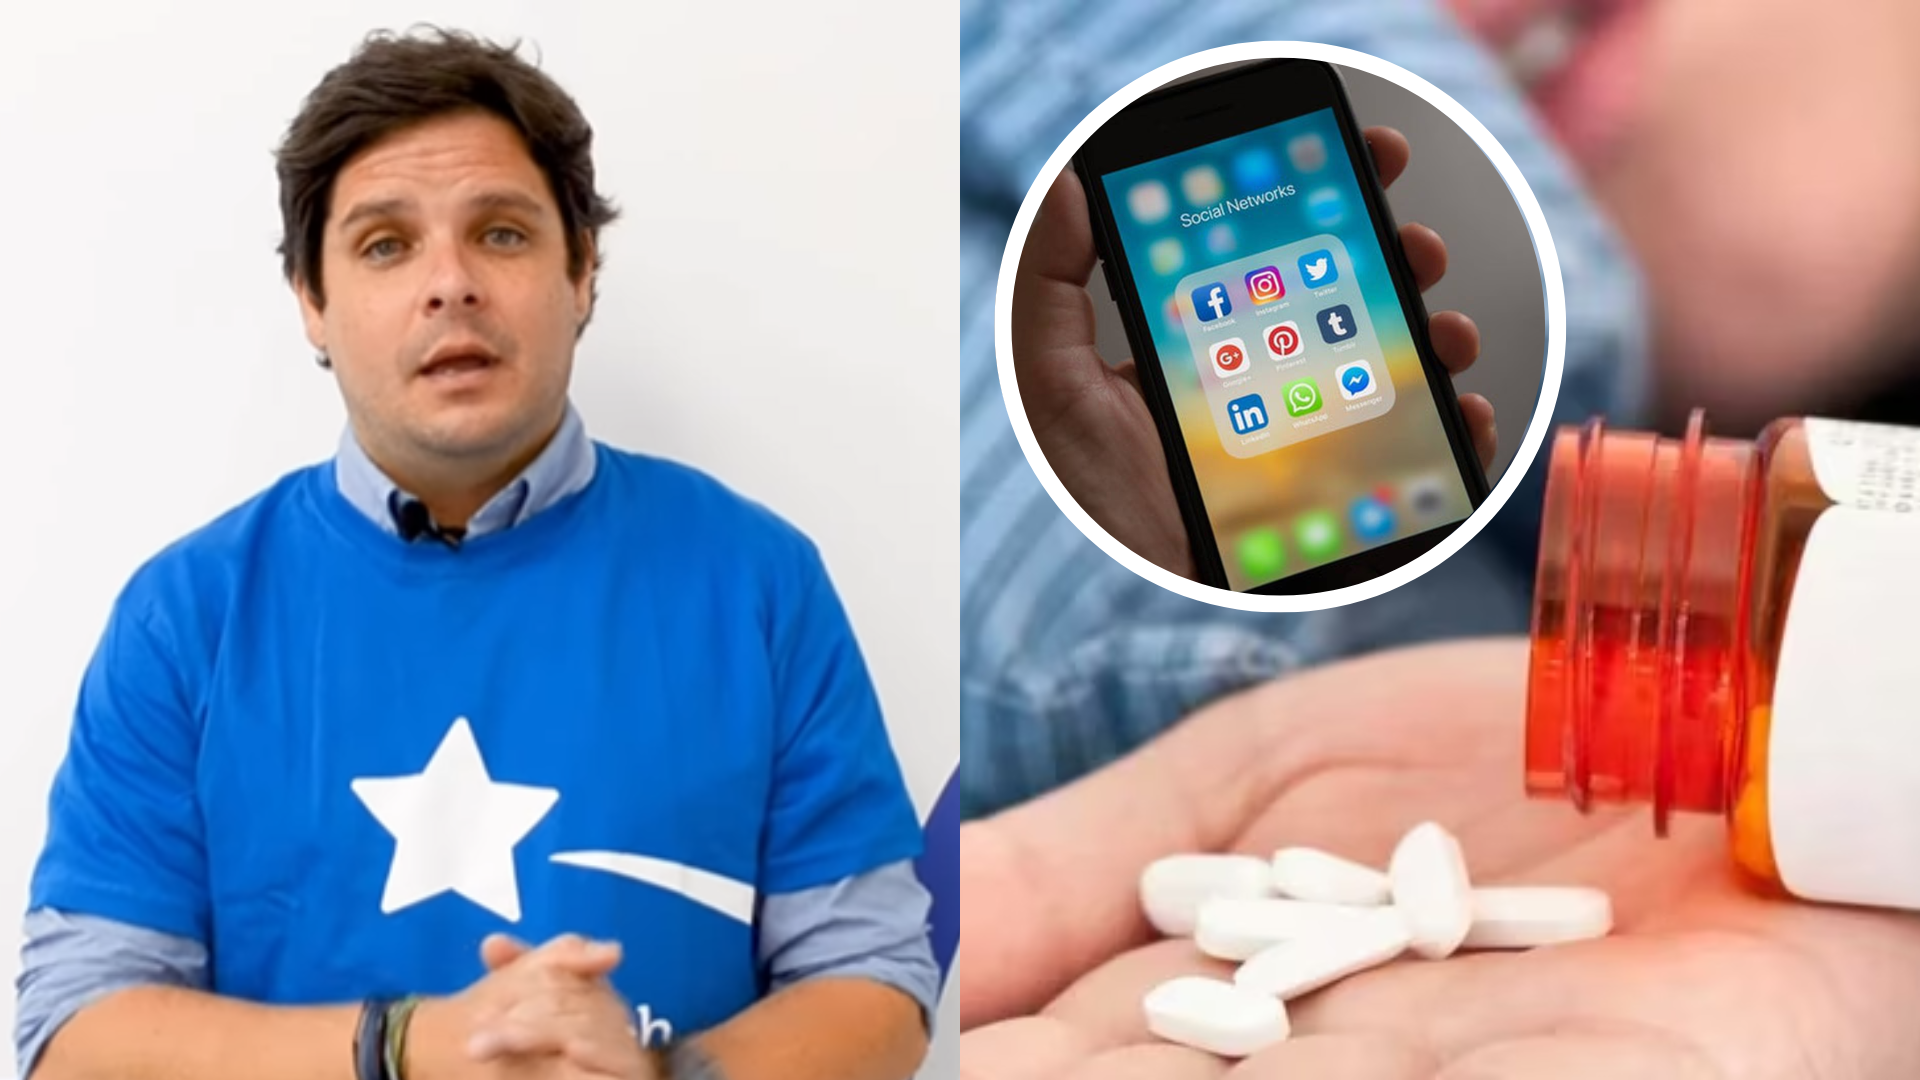 Gian Piero Díaz furioso por la muerte de escolar que ingirió pastillas: “No le compren celulares a los niños”